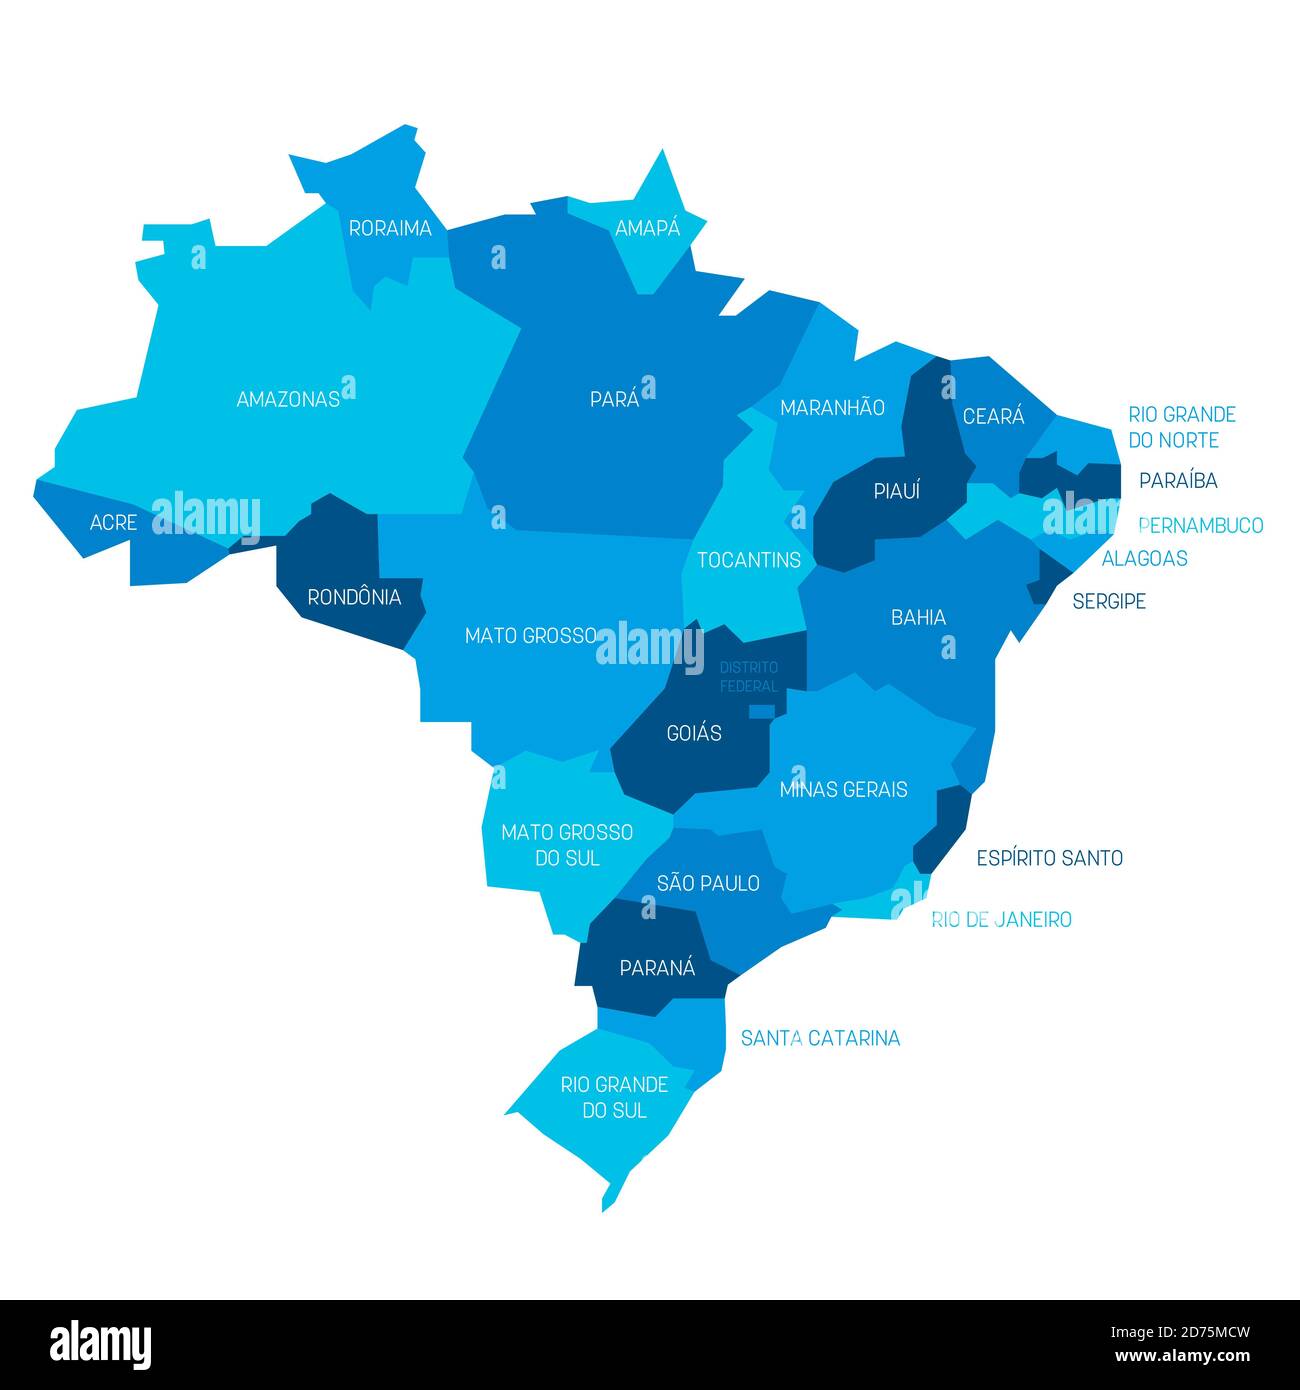 Blaue politische Landkarte von Brasilien. Verwaltungsabteilungen - Staaten. Einfache flache Vektorkarte mit Beschriftungen. Stock Vektor